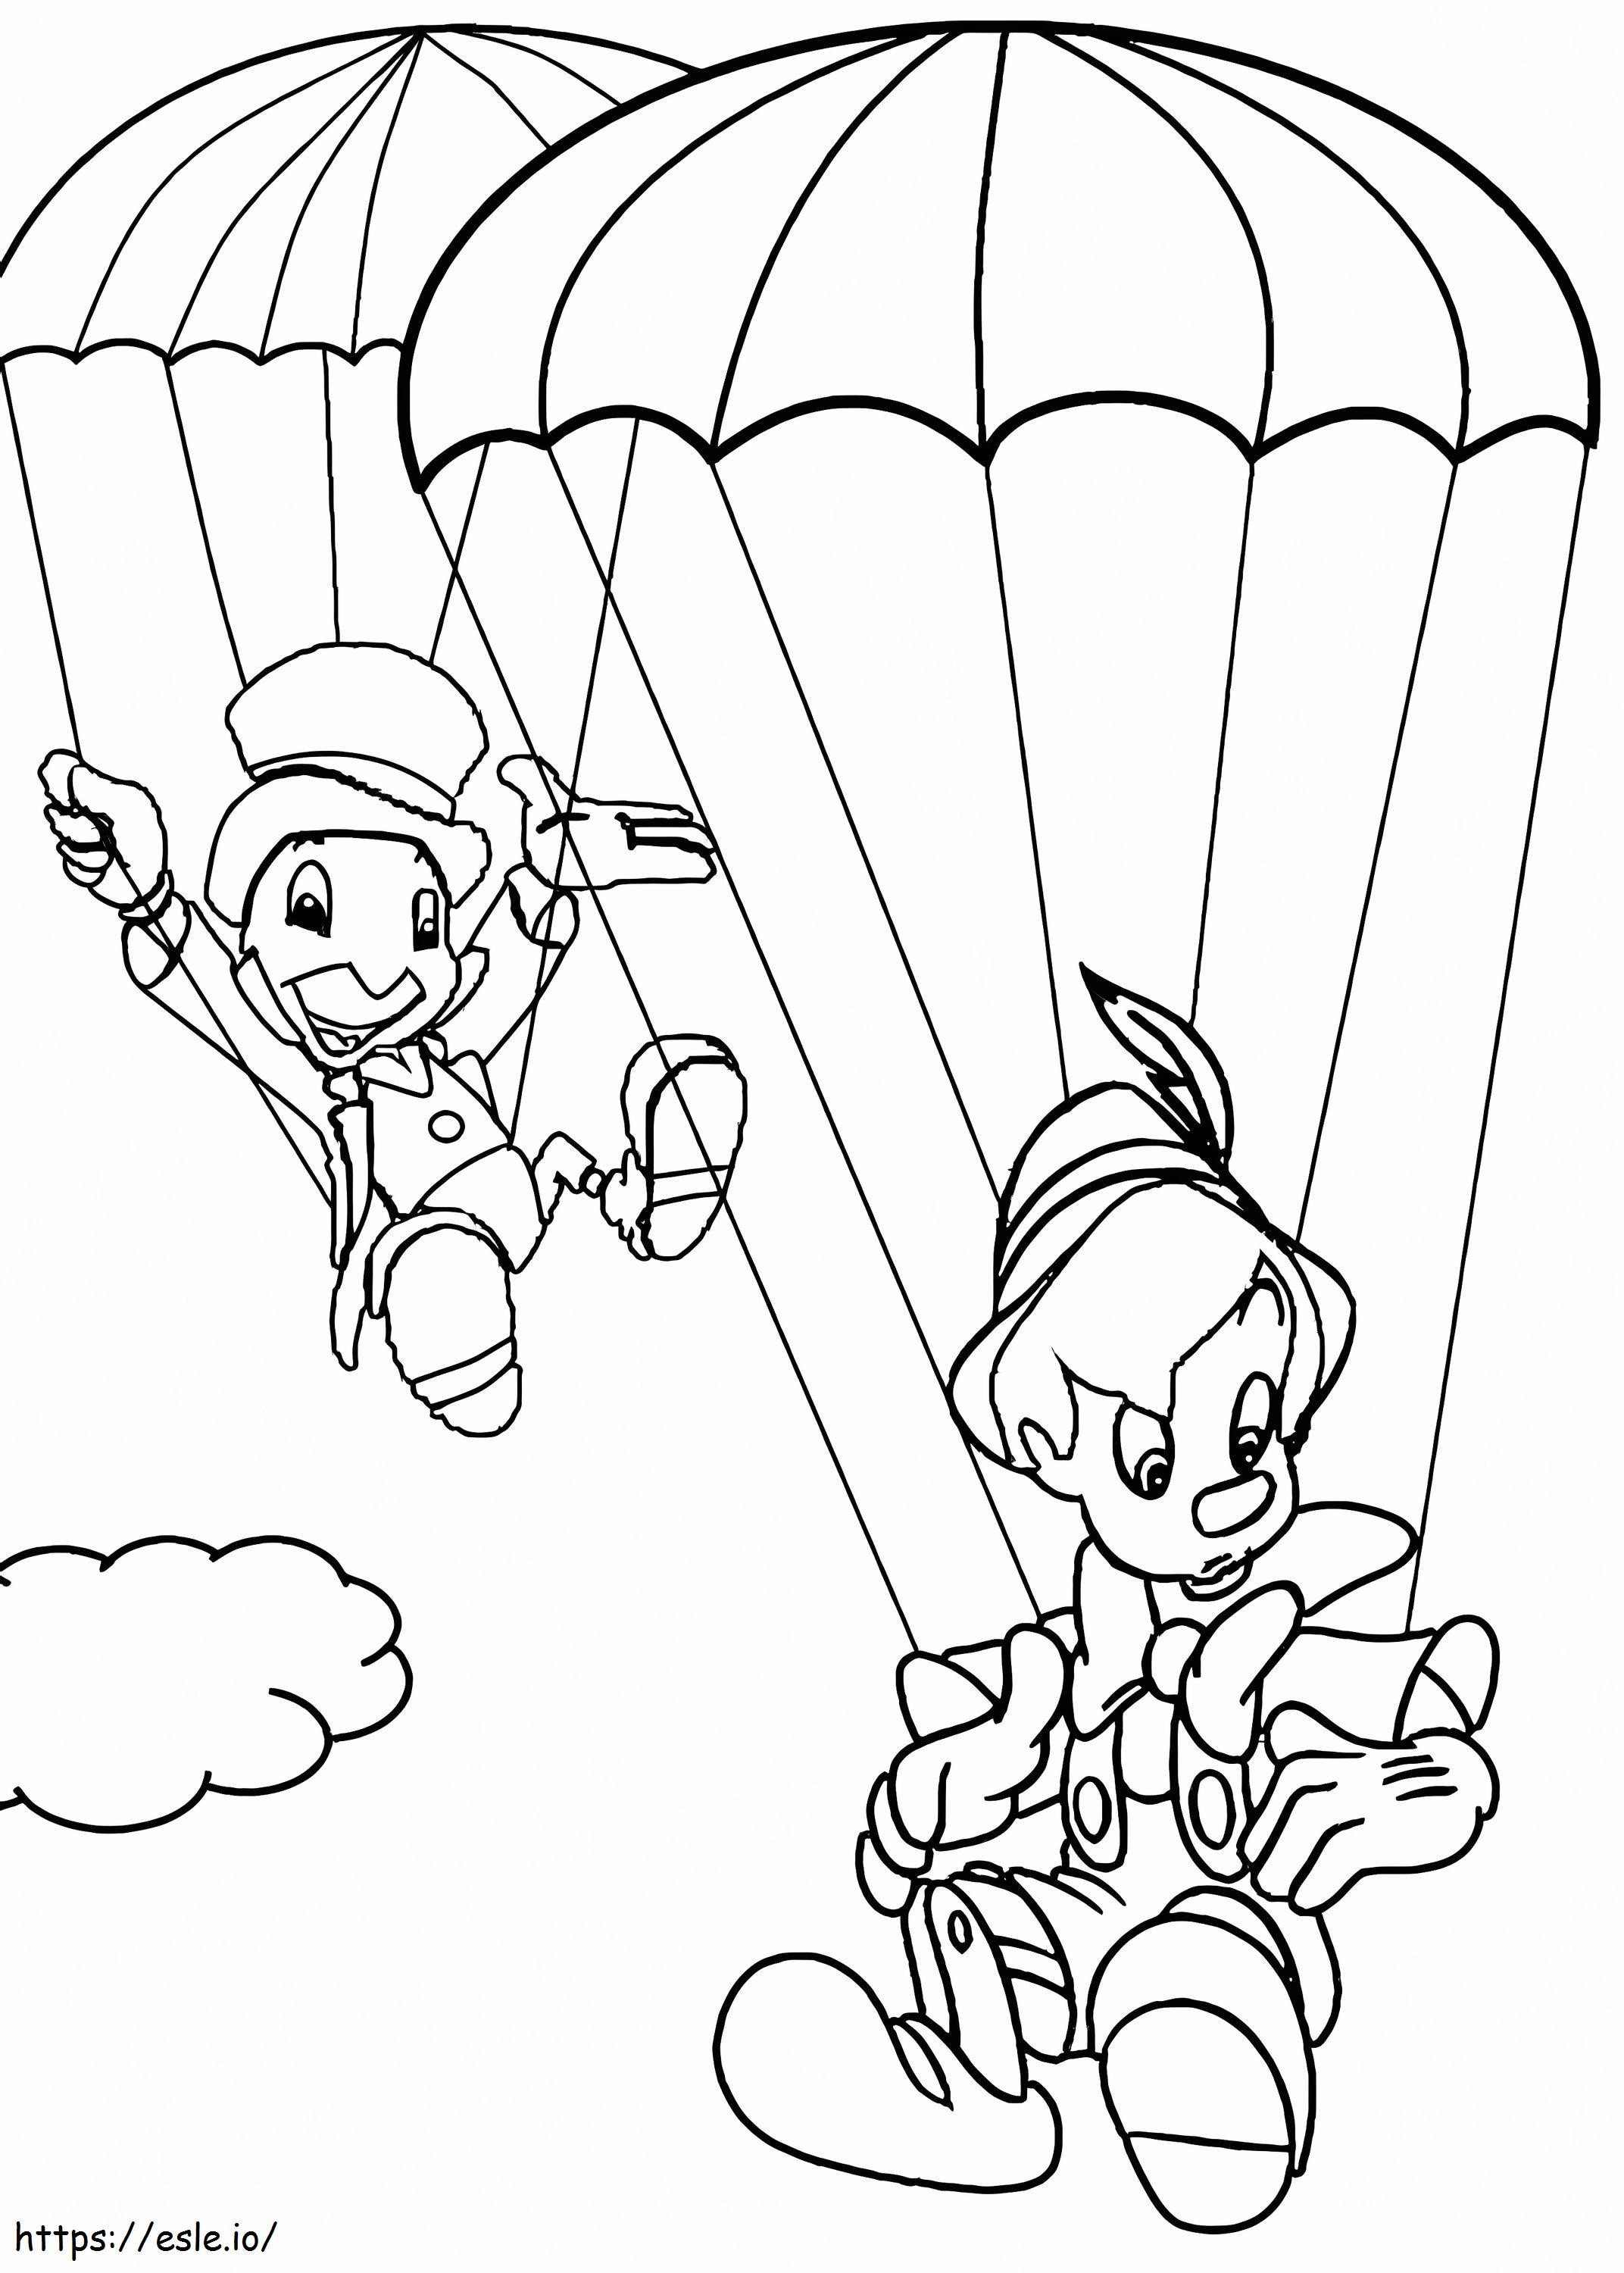 Pinokio dan Jiminy Cricket Gambar Mewarnai